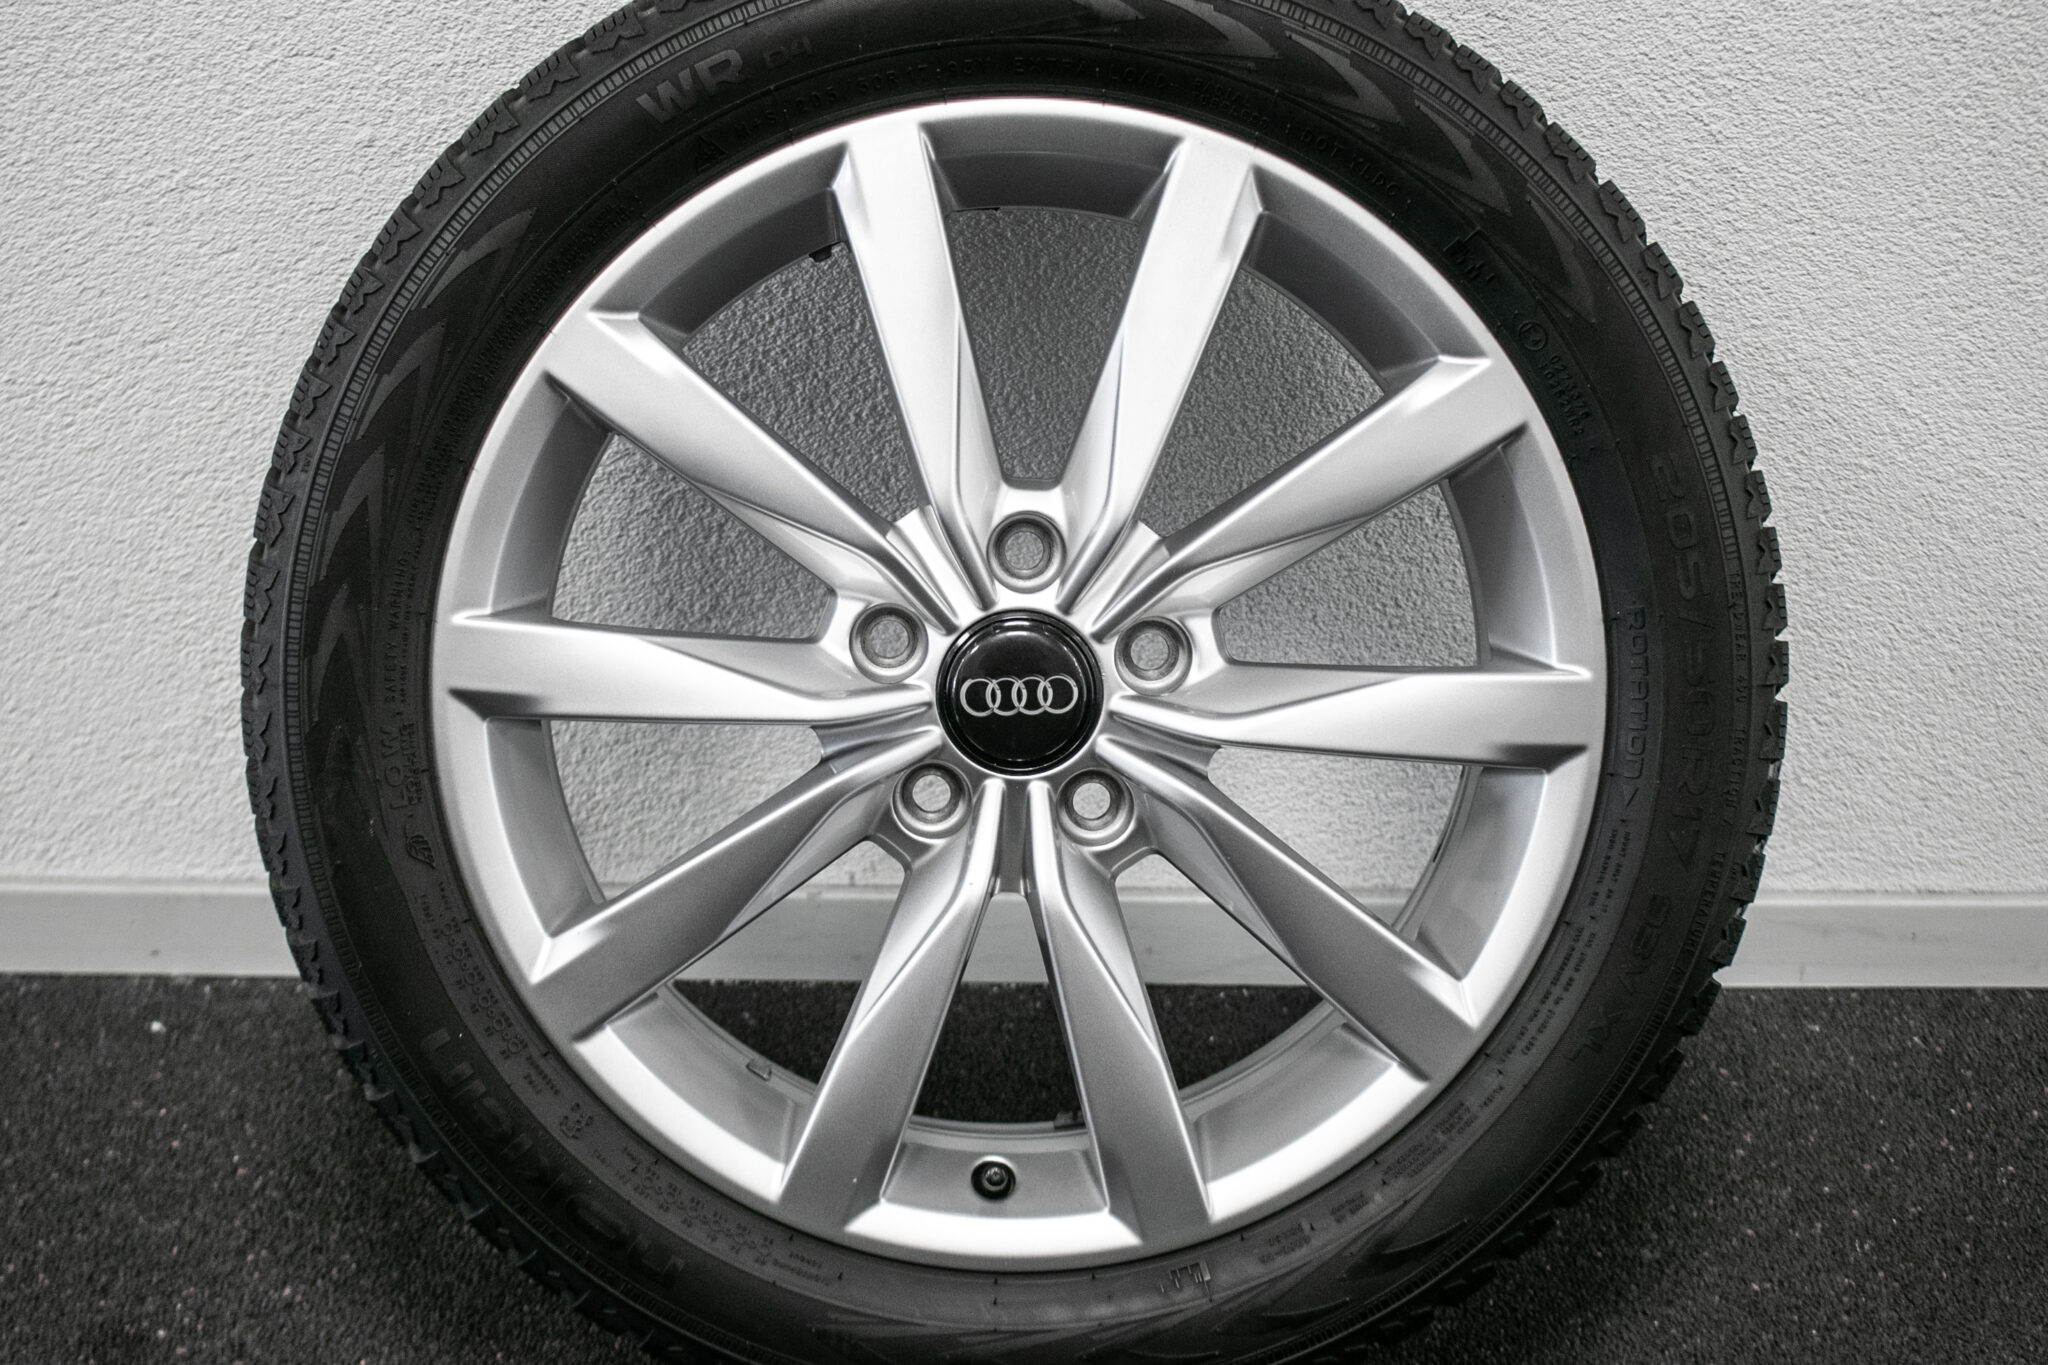 17" Winterwielen voor o.a. Audi
Gebruikt.
Profieldiepte: 6mm - 6.5mm